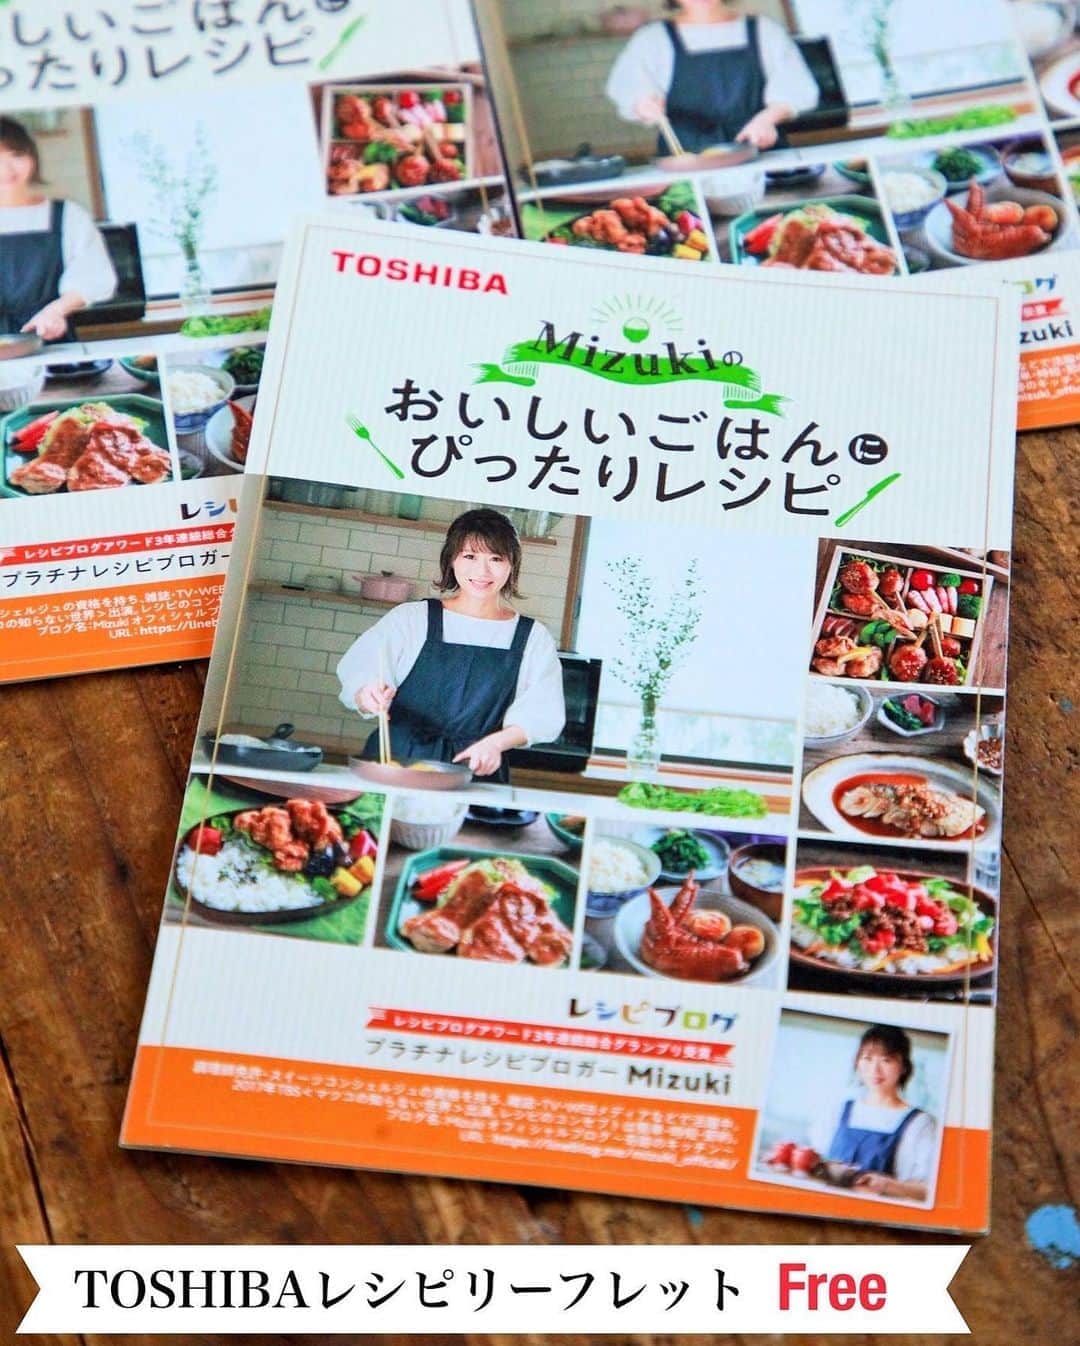 Mizuki【料理ブロガー・簡単レシピ】さんのインスタグラム写真 - (Mizuki【料理ブロガー・簡単レシピ】Instagram)「・﻿ 【レシピ】ーーーーーーー﻿ ♡照り焼き鶏つくね♡﻿ ーーーーーーーーーーーー﻿ ﻿ ﻿ ﻿ こんばんはー(*^^*)﻿ ﻿ 今夜はTOSHIBAレシピリーフレットより﻿ もう一レシピご紹介させていただきます♩﻿ (これで最後です☆)﻿ ﻿ ﻿ 今回はしっかり味で冷めてもおいしい﻿ お弁当にぴったりの鶏つくね♡﻿ (ということで珍し〜く詰めてみました(笑))﻿ もちろん普段のおかずにもおすすめなので﻿ お気軽にお試し下さいね(*^^*)﻿ ﻿ ﻿ ﻿ ーーーーーーーーーーーーーーーーーーーー﻿ 【2人分】﻿ 鶏ひき肉…200g﻿ 長ねぎ…10㎝﻿ ●酒・パン粉…各大1﻿ ●塩…小1/4﻿ ●生姜チューブ…3㎝﻿ 薄力粉…適量﻿ ☆醤油・みりん…各大1﻿ ☆砂糖…小1﻿ サラダ油…大1/2﻿ （あれば）白ごま…適量﻿  ﻿ 1.長ねぎはみじん切りにする。ボウルにひき肉、長ねぎ、●を入れ、粘りが出るまでよく混ぜる。手に水をつけて6等分の小判型にし、薄力粉をまぶす。﻿ 2.フライパンにサラダ油を入れて中火で熱し、１を焼く。焼き色がついたら裏返し、蓋をして弱火で3分蒸し焼きにする。﻿ 3.余分な油を拭き取り、☆を加えて中火で煮からめる。﻿ 4.仕上げに（お好みで）串を刺し、ごまを振る。﻿ ーーーーーーーーーーーーーーーーーーーー﻿ ﻿ ﻿ ﻿ 《ポイント》﻿ ♦︎鶏ひき肉は"もも"が柔らかく仕上がるのでおすすめです。﻿ ♦︎長ねぎの代わりに玉ねぎを使用しても。﻿ ♦︎薄力粉をまぶしておくことで、たれがしっかりからみます。﻿ ﻿ ﻿ ﻿ ﻿ ﻿ ﻿ レシピリーフレットは無料で﻿ 全国の家電量販店さんに設置中なので﻿ (TOSHIBA炊飯器の周辺にあるかと！)﻿ どうぞお持ちいただけたら嬉しいです😊﻿ (とはいえこのような状況ですので﻿ 決してご無理はされませんように💦)﻿ ﻿ ﻿ 想定設置数は以下の通りとなりますが﻿ 店舗現場の状況にもよりますので﻿ ''直接お店に''お問い合わせ下さいませ✨﻿ ↓  ↓  ↓﻿ ーーーーーーーーーーーーーーーー﻿ 「北海道・東北」約21箇所 ﻿ 「北関東・首都圏」約270箇所 ﻿ 「北信越」約66箇所 ﻿ 「中部」80箇所 ﻿ 「関西」90箇所 ﻿ 「中四国」約90箇所﻿ 「九州」約150箇所﻿ ーーーーーーーーーーーーーーーー﻿ ﻿ ﻿ ﻿ ﻿ ﻿ ﻿ ＿＿＿＿＿＿＿＿＿＿＿＿＿＿＿＿＿＿＿﻿ 📕6刷重版しました📕﻿ 簡単・時短！ 毎日のごはんがラクになる﻿ ✨🦋 【 #Mizukiの今どき和食 】🦋✨﻿ ＿＿＿＿＿＿＿＿＿＿＿＿＿＿＿＿＿＿＿﻿ なるべく少ない材料で﻿ 手間も時間も省きながら﻿ 簡単にできるおいしい和食レシピ♩﻿ 簡単に失敗なくマスターできる一冊で﻿ もっと気軽に、カジュアルに﻿ 和食を楽しんで下さいね(*^^*)﻿ ＿＿＿＿＿＿＿＿＿＿＿＿＿＿＿＿＿＿＿﻿ ﻿ ﻿ ﻿ ＿＿＿＿＿＿＿＿＿＿＿＿＿＿＿＿＿＿＿﻿ 🎀6刷重版しました🎀﻿ 混ぜて焼くだけ。はじめてでも失敗しない！﻿ 【#ホットケーキミックスのお菓子 】﻿ ﻿ 一冊まるっとホケミスイーツ♩﻿ 普段のおやつから﻿ 特別な日にも使えるレシピを﻿ この一冊に詰め込みました(*^^*)﻿ ホットケーキミックスを使えば﻿ 簡単に本格的なお菓子が作れますよ♡﻿ ＿＿＿＿＿＿＿＿＿＿＿＿＿＿＿＿＿﻿ ﻿ ﻿ ﻿ ﻿ ￣￣￣￣￣￣￣￣￣￣￣￣￣￣￣￣￣￣﻿ レシピを作って下さった際や﻿ レシピ本についてのご投稿には﻿ タグ付け( @mizuki_31cafe )して﻿ お知らせいただけると嬉しいです😊💕﻿ ＿＿＿＿＿＿＿＿＿＿＿＿＿＿＿＿＿＿﻿ ﻿ ﻿ ﻿ ﻿ ﻿ #鶏つくね#つくね#お弁当#TOSHIBA#東芝#Mizuki#簡単レシピ#時短レシピ#節約レシピ#料理#レシピ#フーディーテーブル#マカロニメイト#おうちごはん#デリスタグラマー#料理好きな人と繋がりたい#食べ物#料理記録#おうちごはんlover#写真好きな人と繋がりたい#foodpic#cooking#recipe#lin_stagrammer#foodporn#yummy#照り焼き鶏つくねm」8月11日 20時12分 - mizuki_31cafe